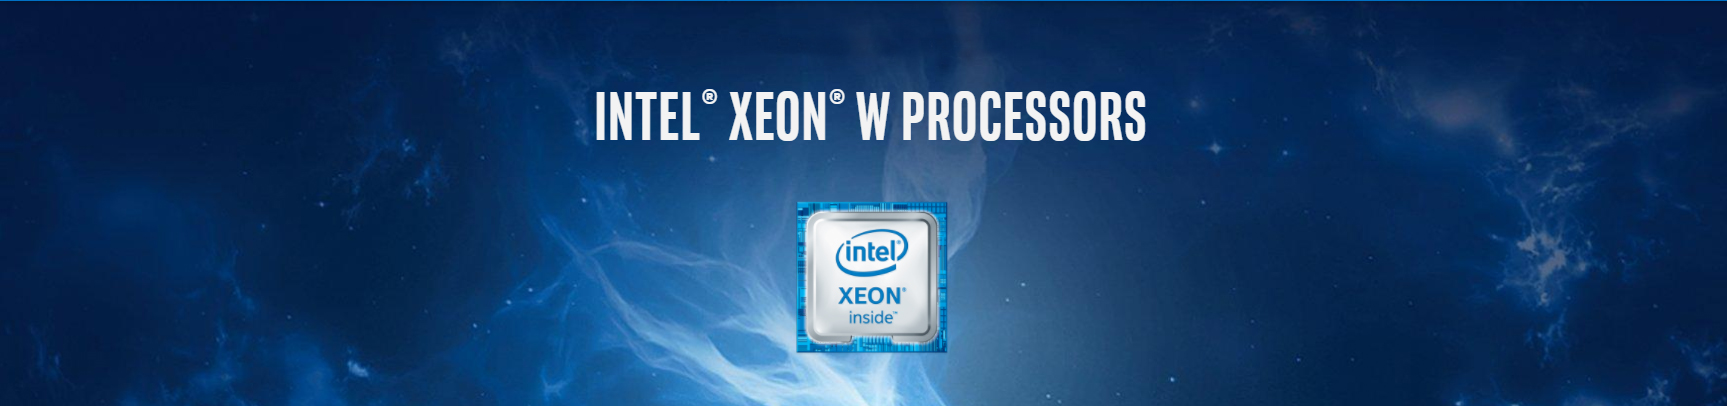 Intel Xeon W Processors